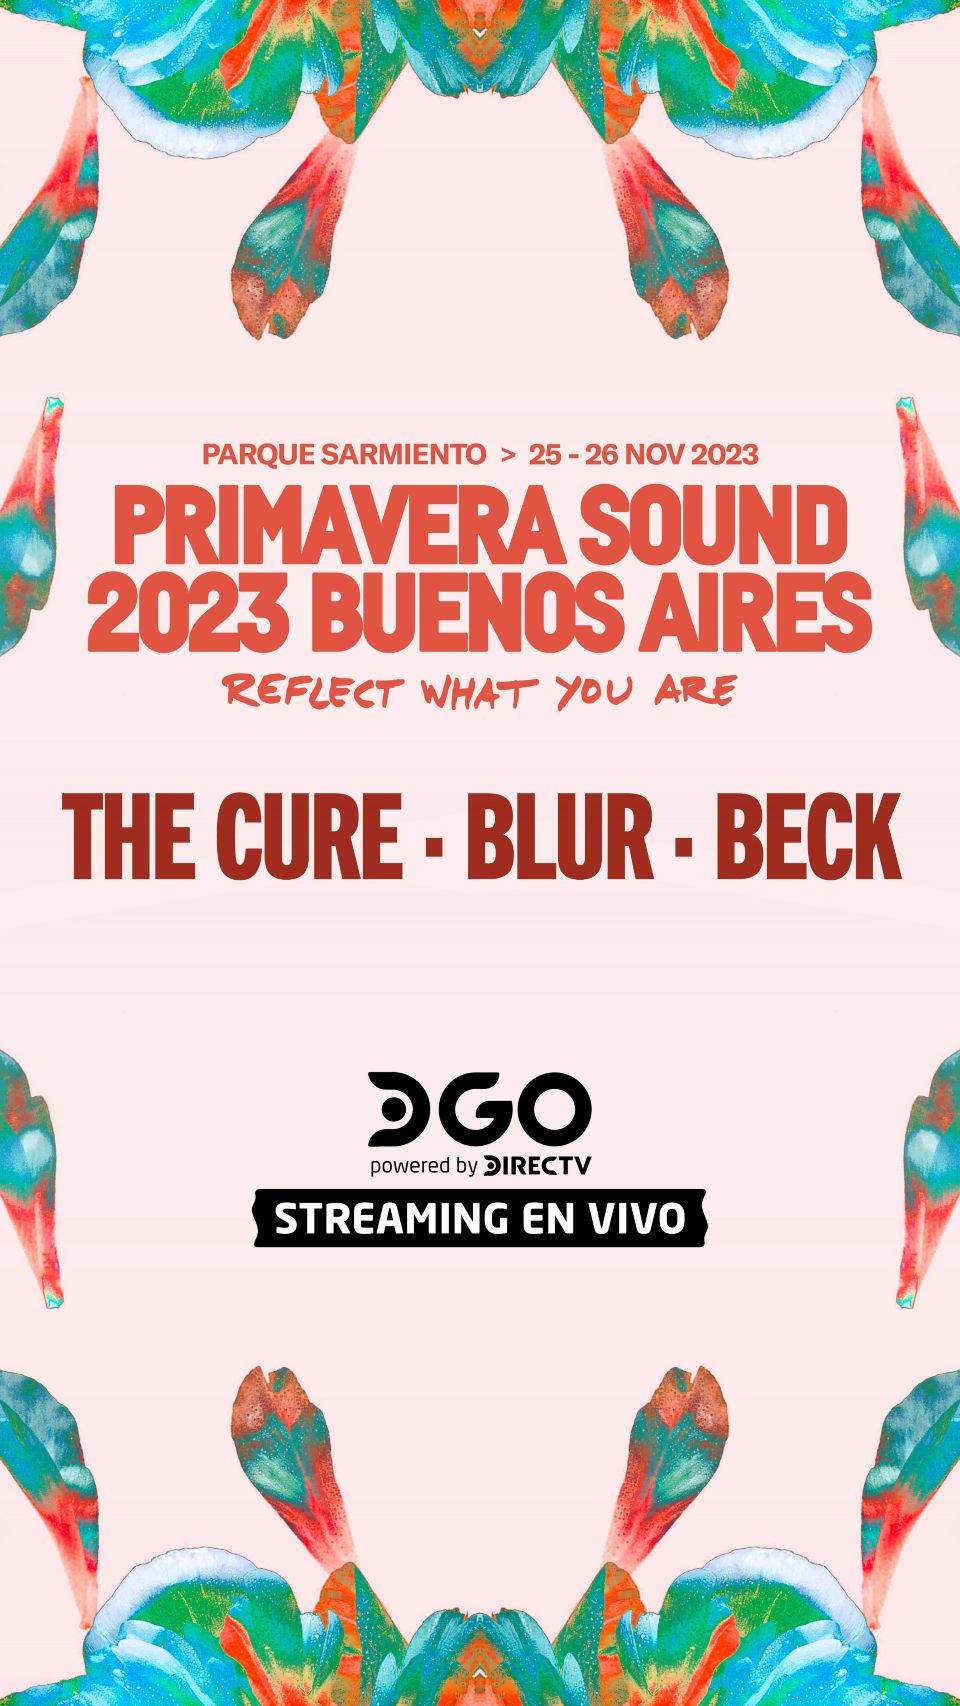 DIRECTV y DGO transmitirán el PRIMAVERA SOUND 2023 BUENOS AIRES